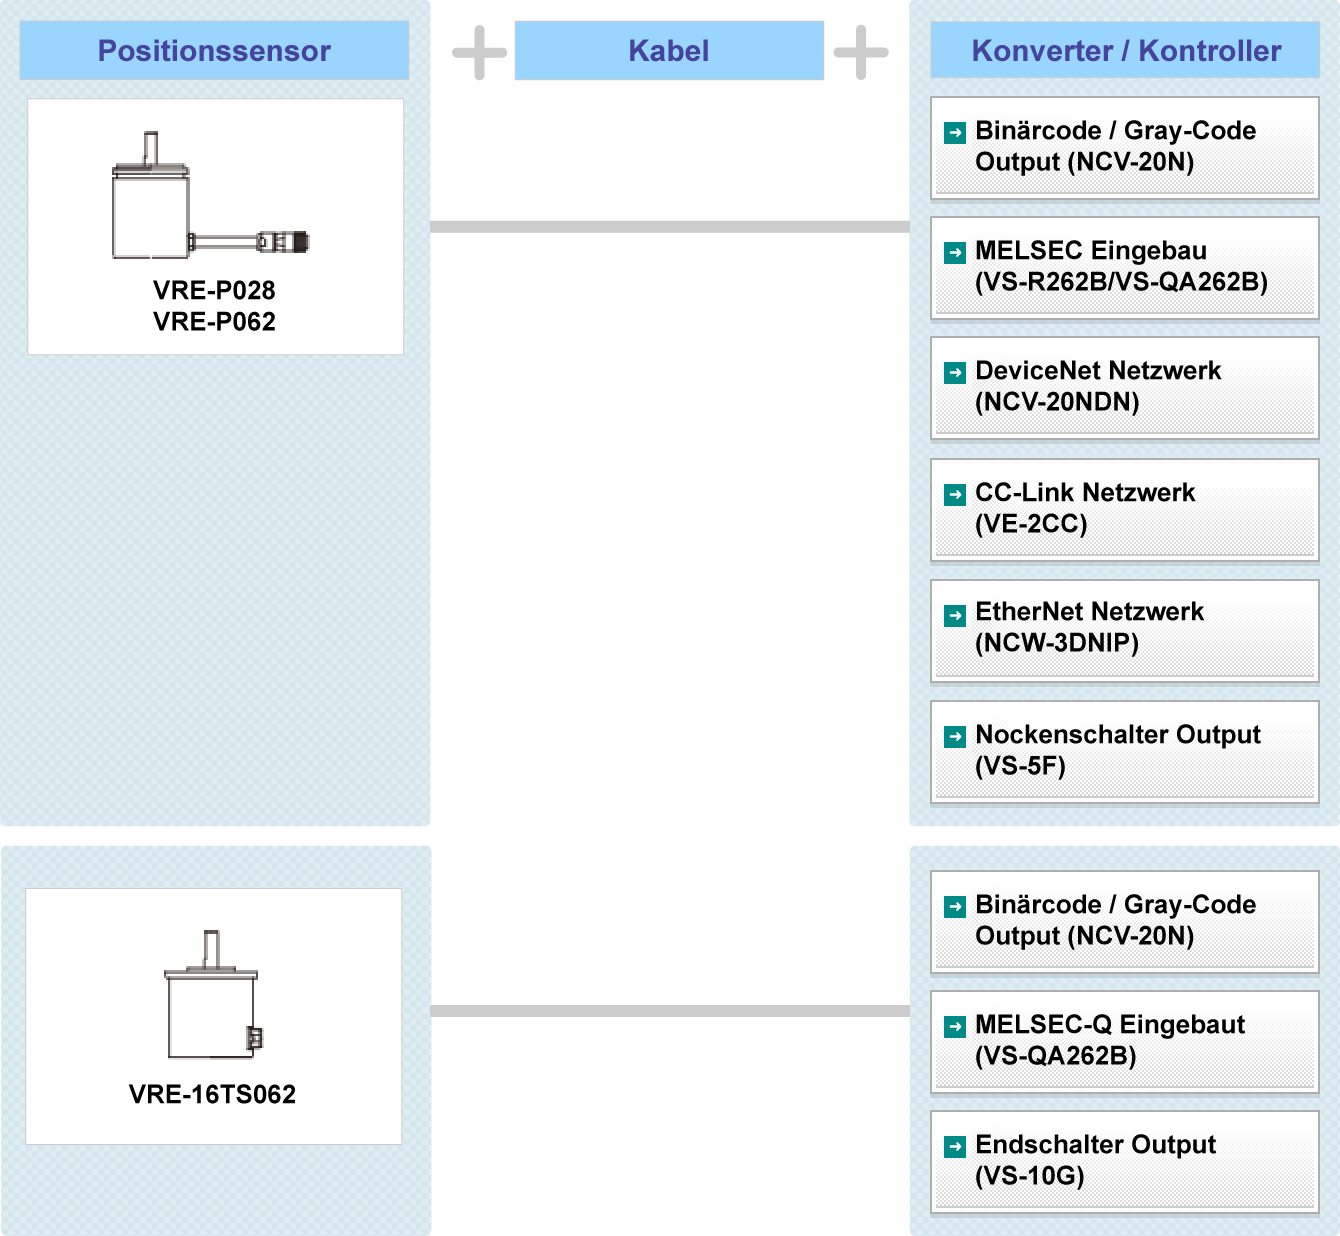 Fig.: VRE Systemkonfiguration